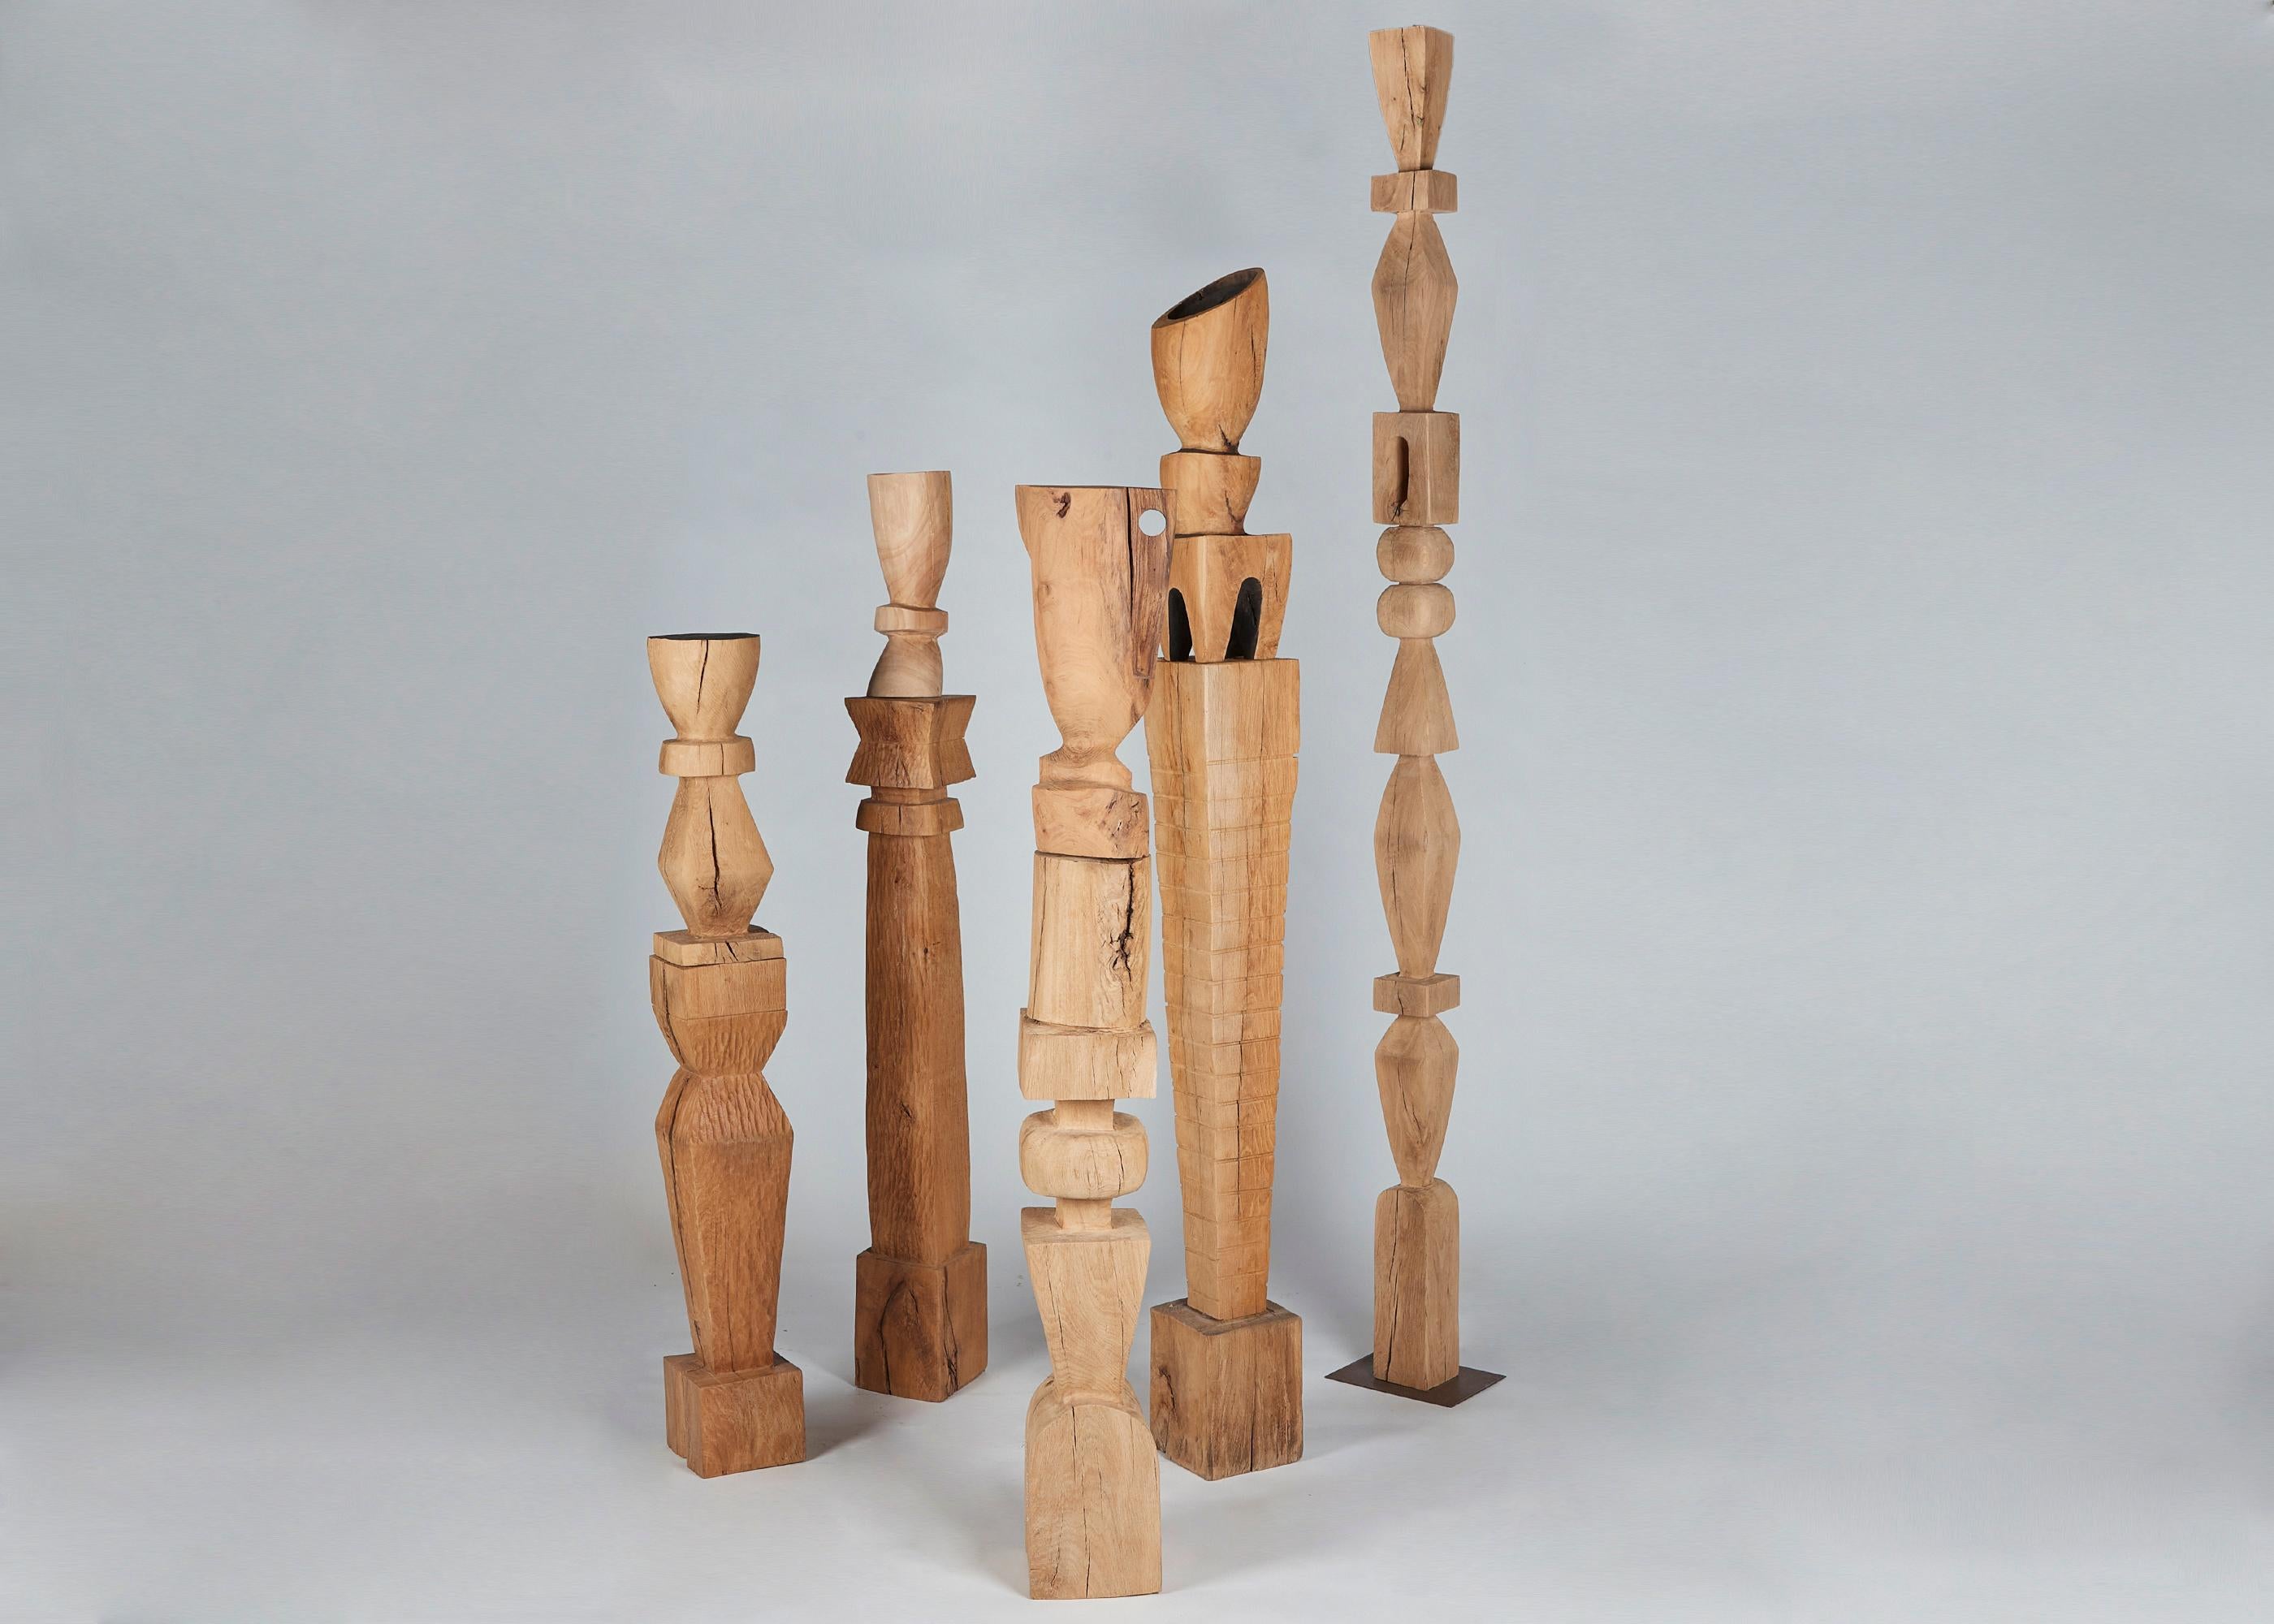 Hand-Carved Franck Evennou, Large-Scale Wooden TOTEM, France, 2020